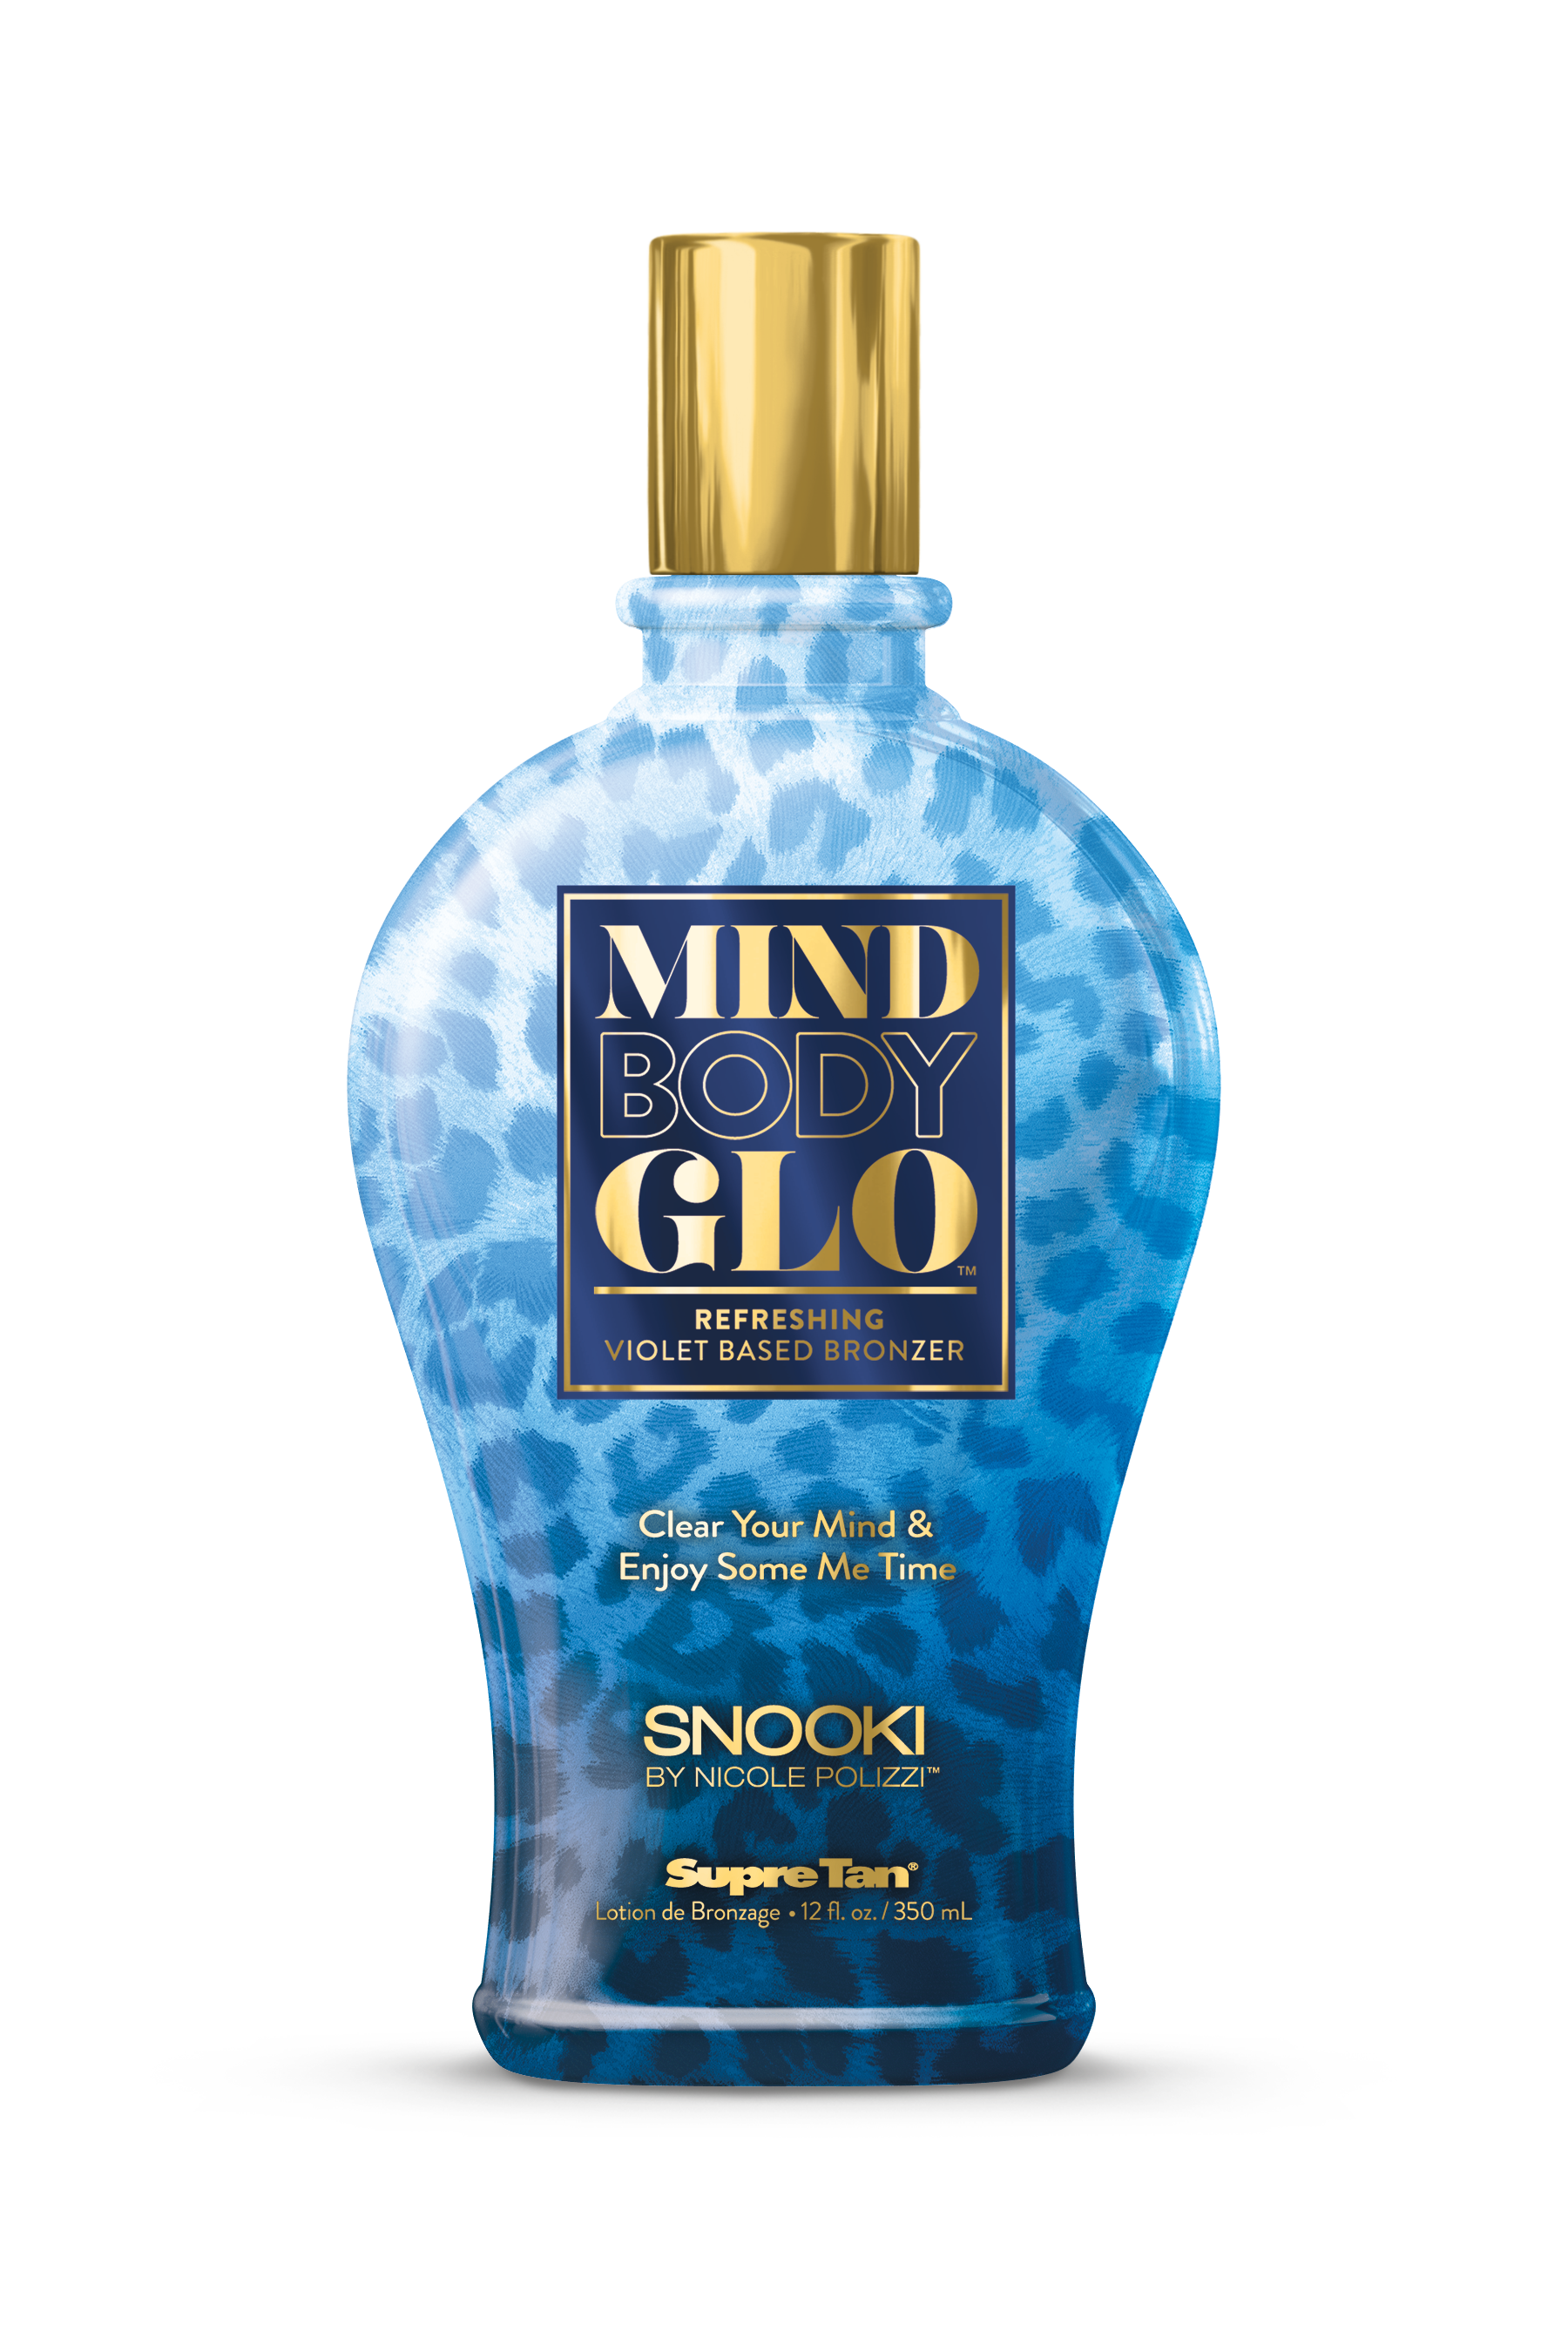 Mind Body Glo Refreshing Violet Based Bronzer